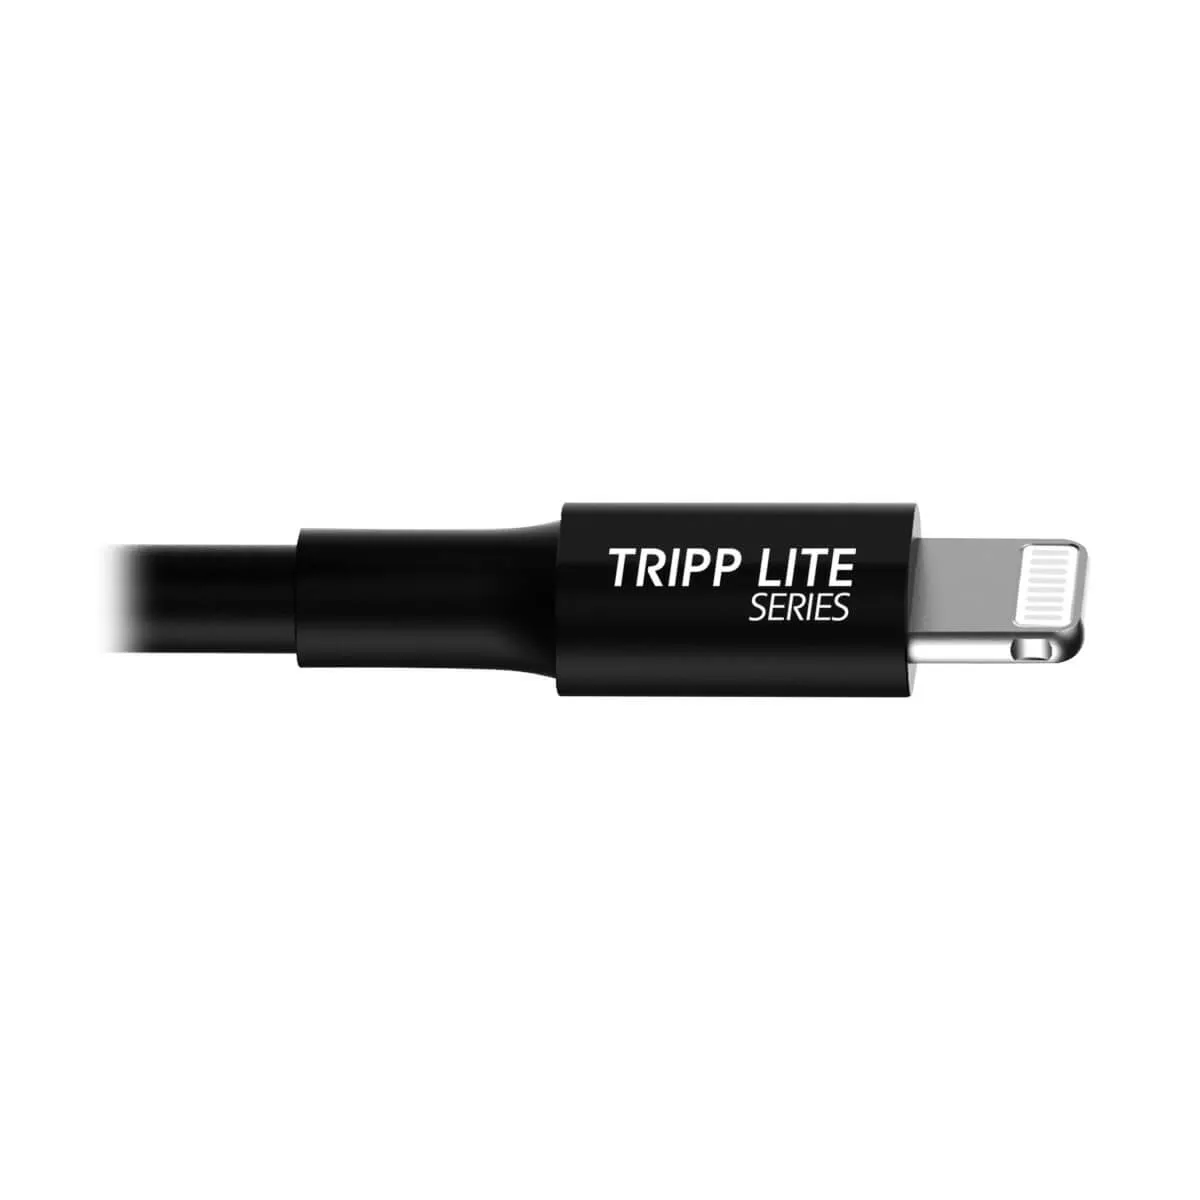 Vente EATON TRIPPLITE USB-A to Lightning Sync/Charge Cable Tripp Lite au meilleur prix - visuel 10